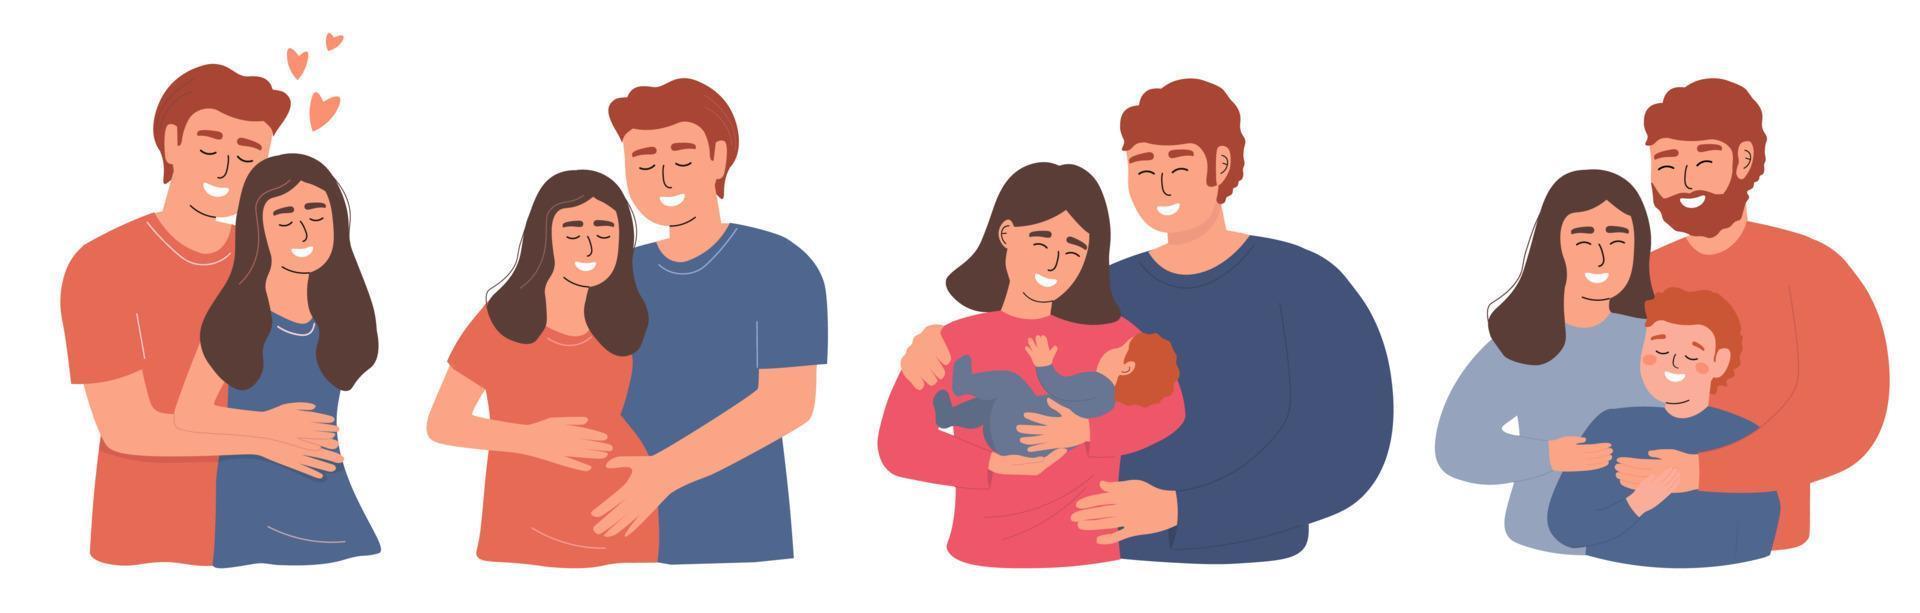 eine Reihe glücklicher Familienporträts. ein junges verliebtes paar, eine schwangere frau, eine mutter und ein vater mit baby. Vektorgrafiken. vektor